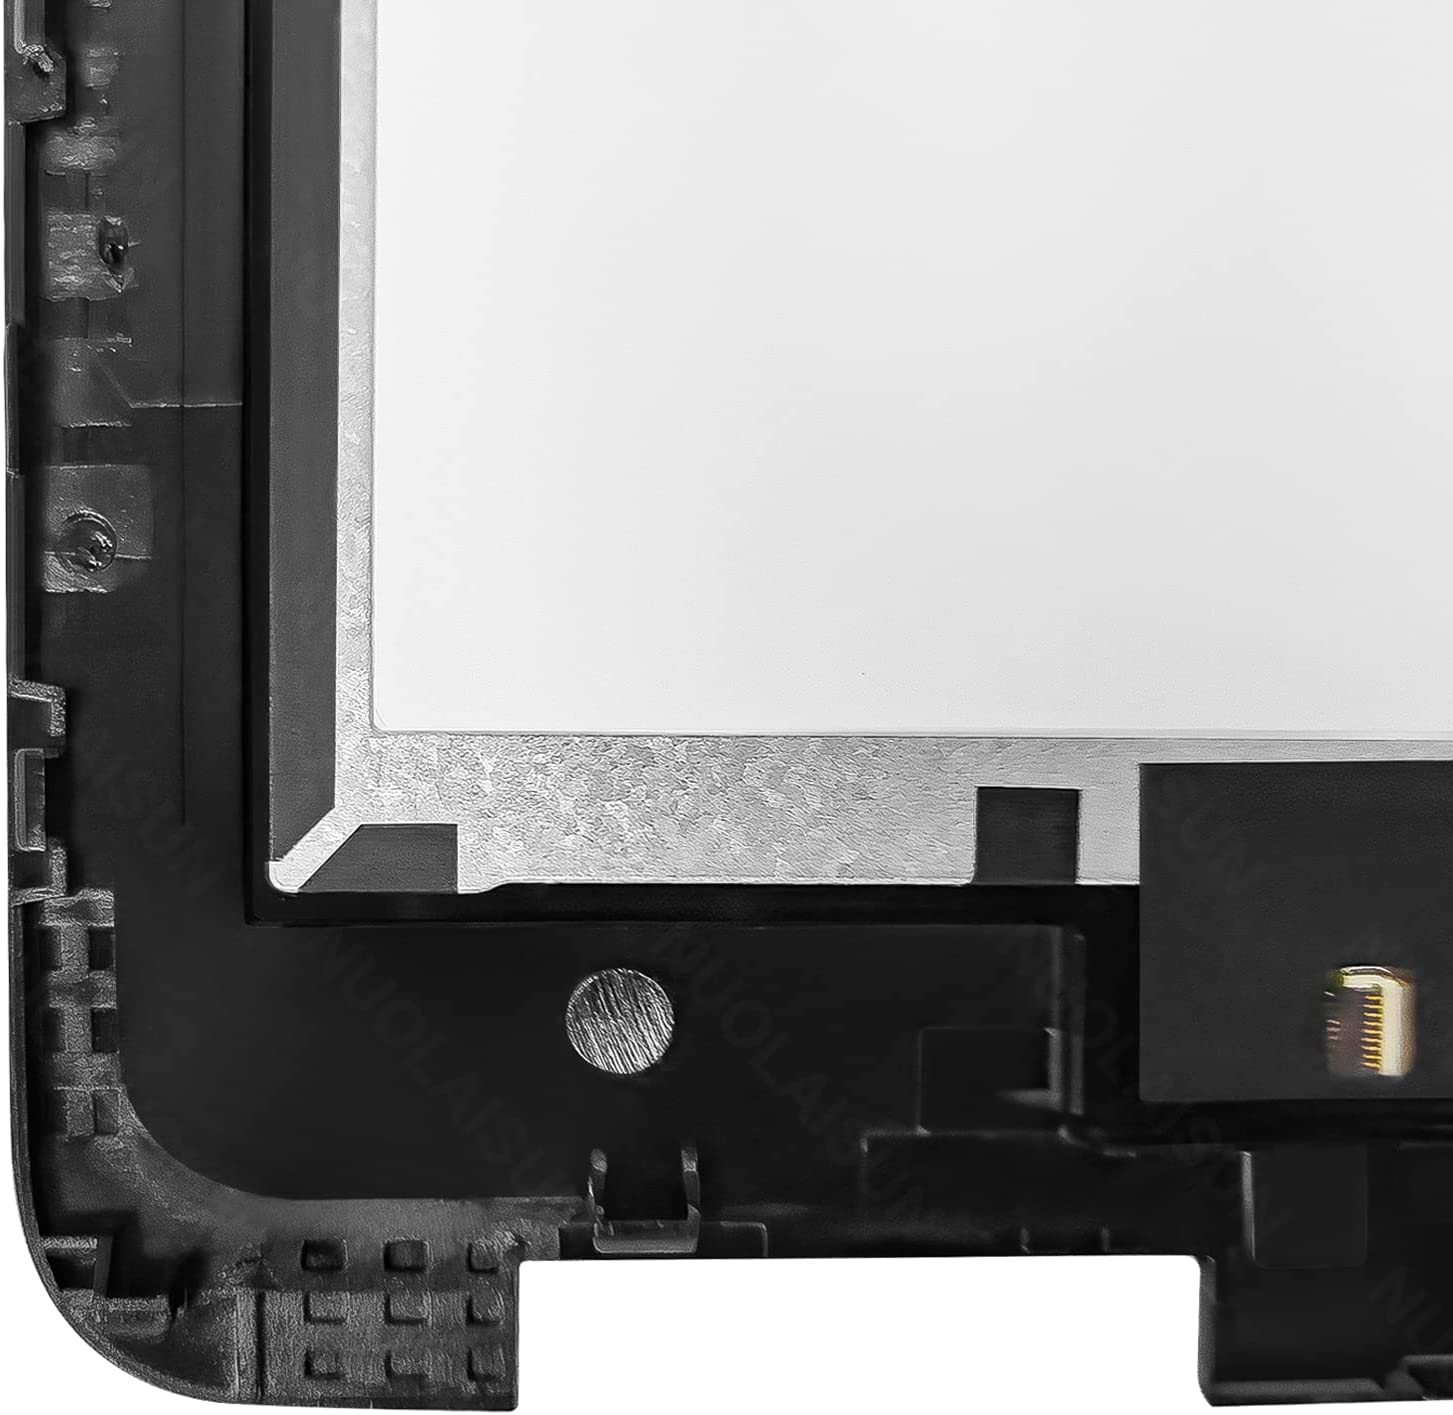 Dell ChromeBook 11 3100 এর জন্য LCD টাচ স্ক্রীন ডিসপ্লে অ্যাসেম্বলি - 3 